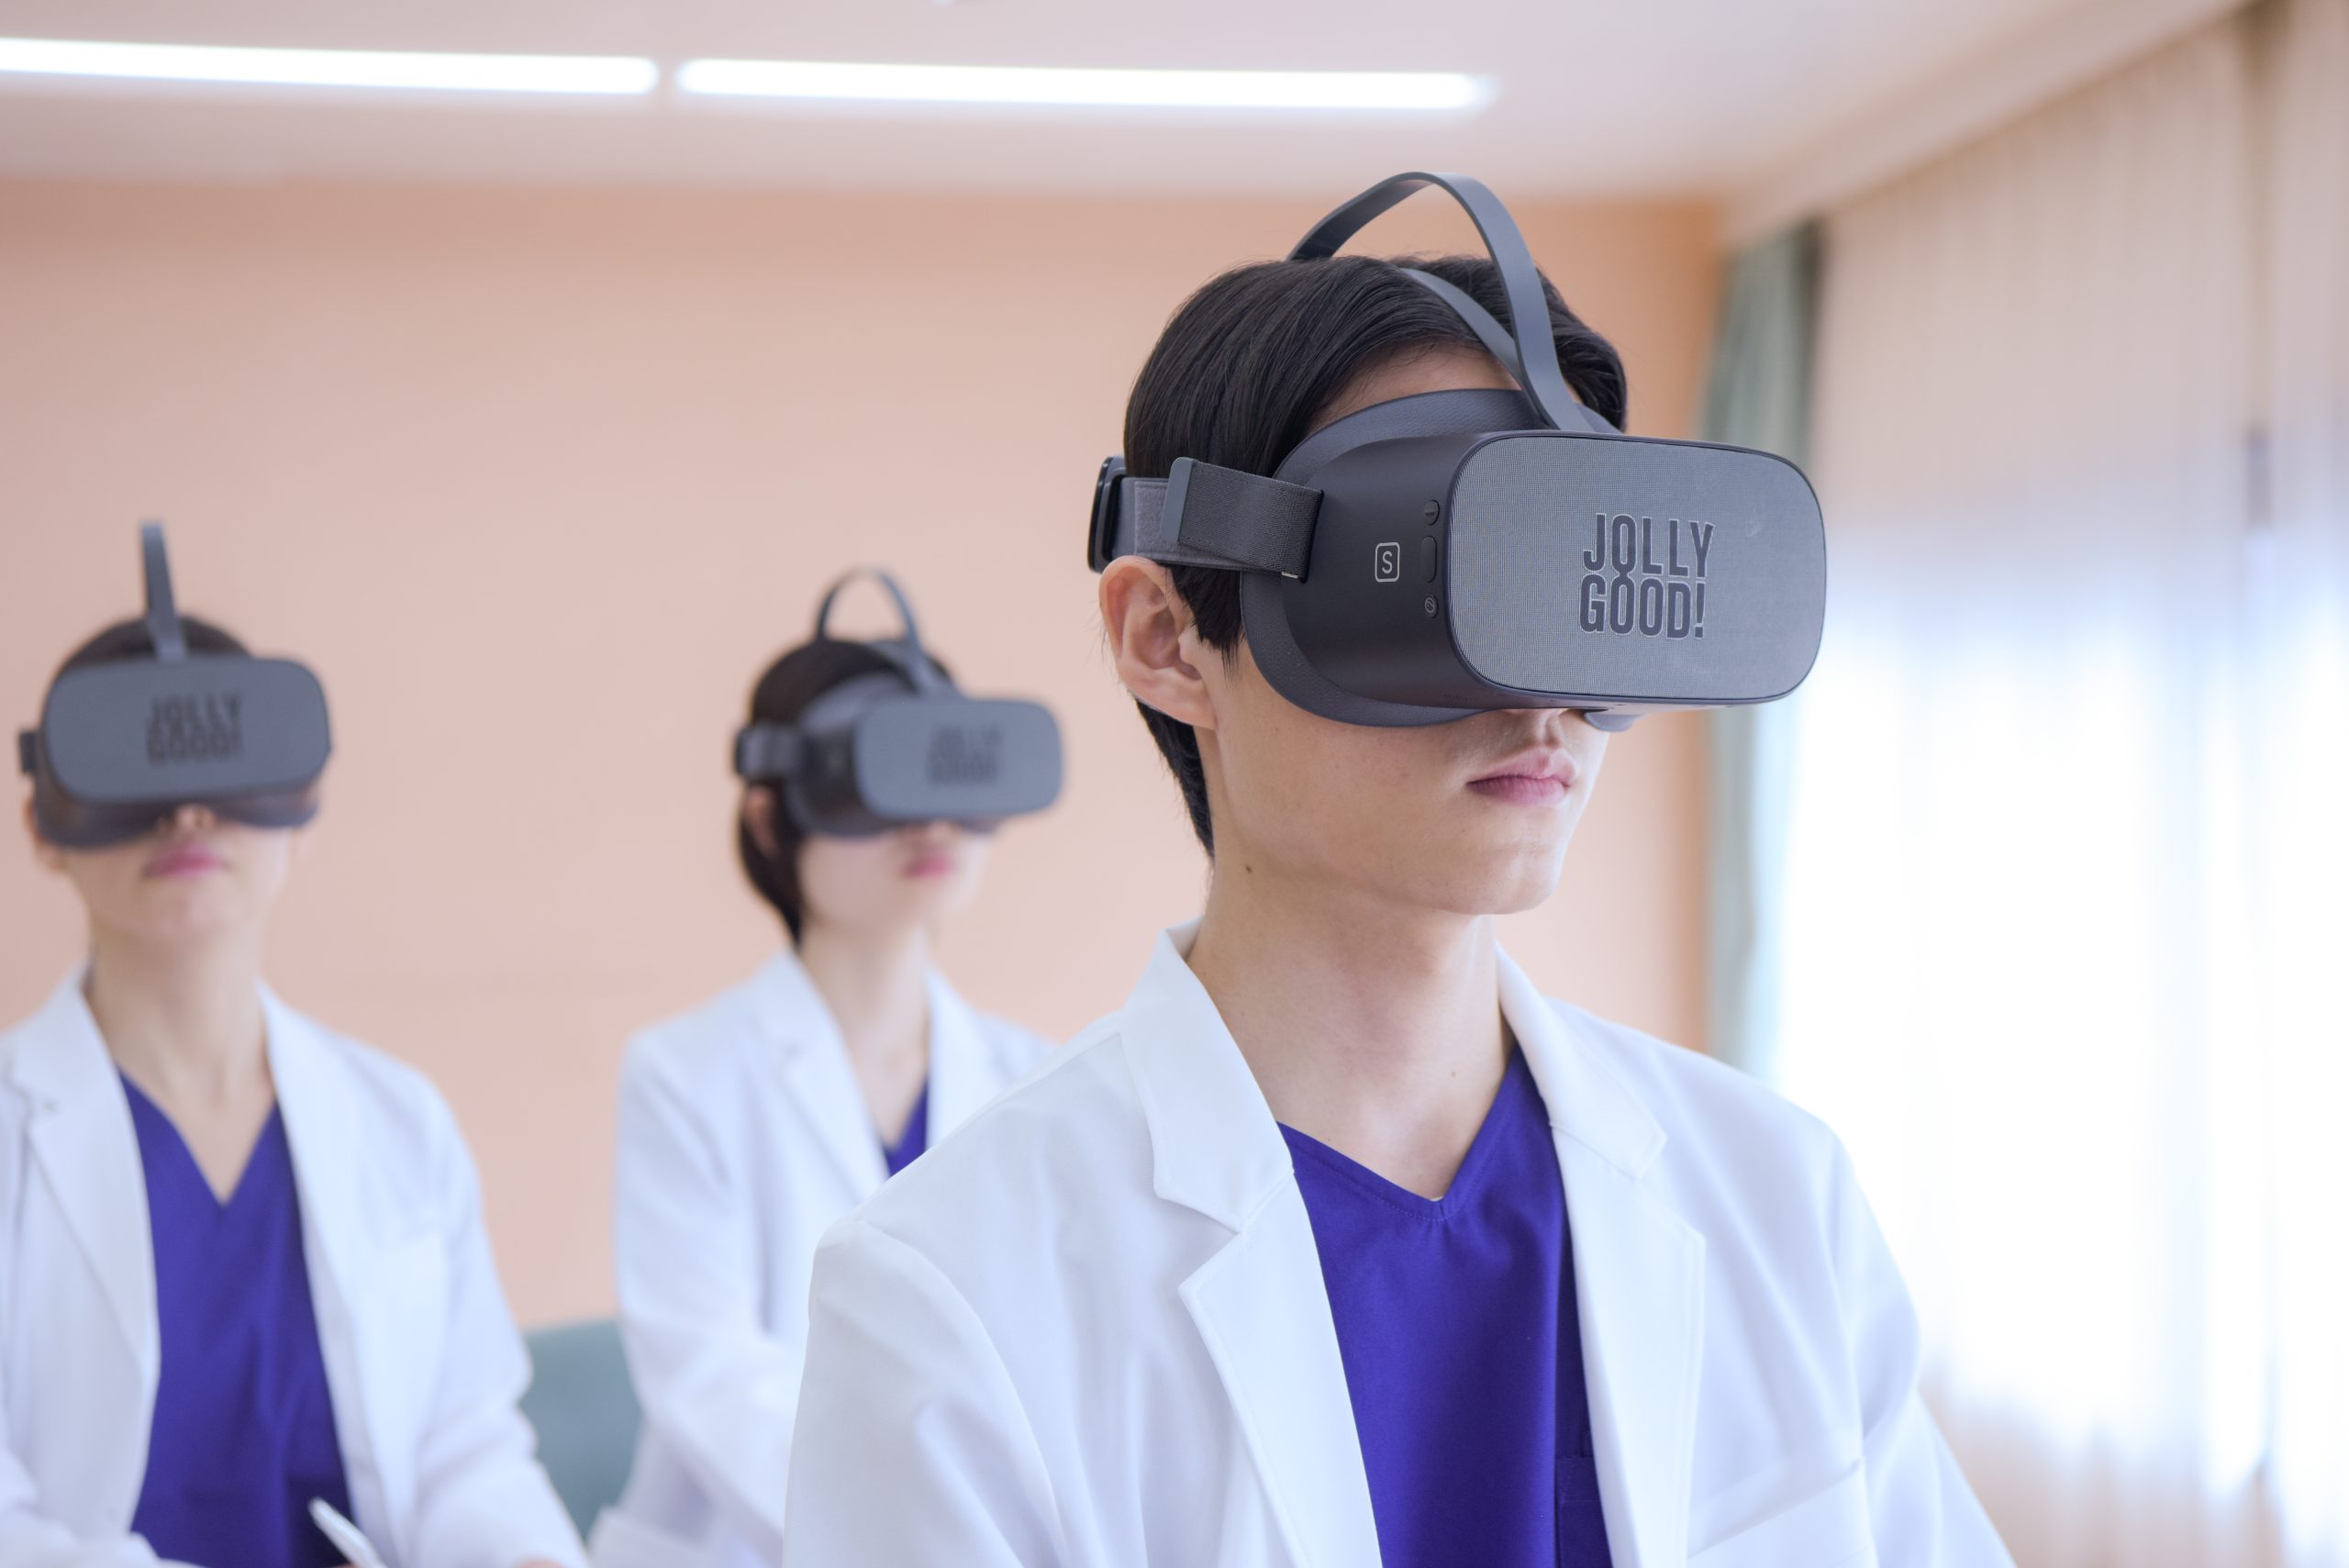 日本経済新聞にて、ジョリーグッドと東京歯科大学が共同開発する歯科教育VRについて紹介されました